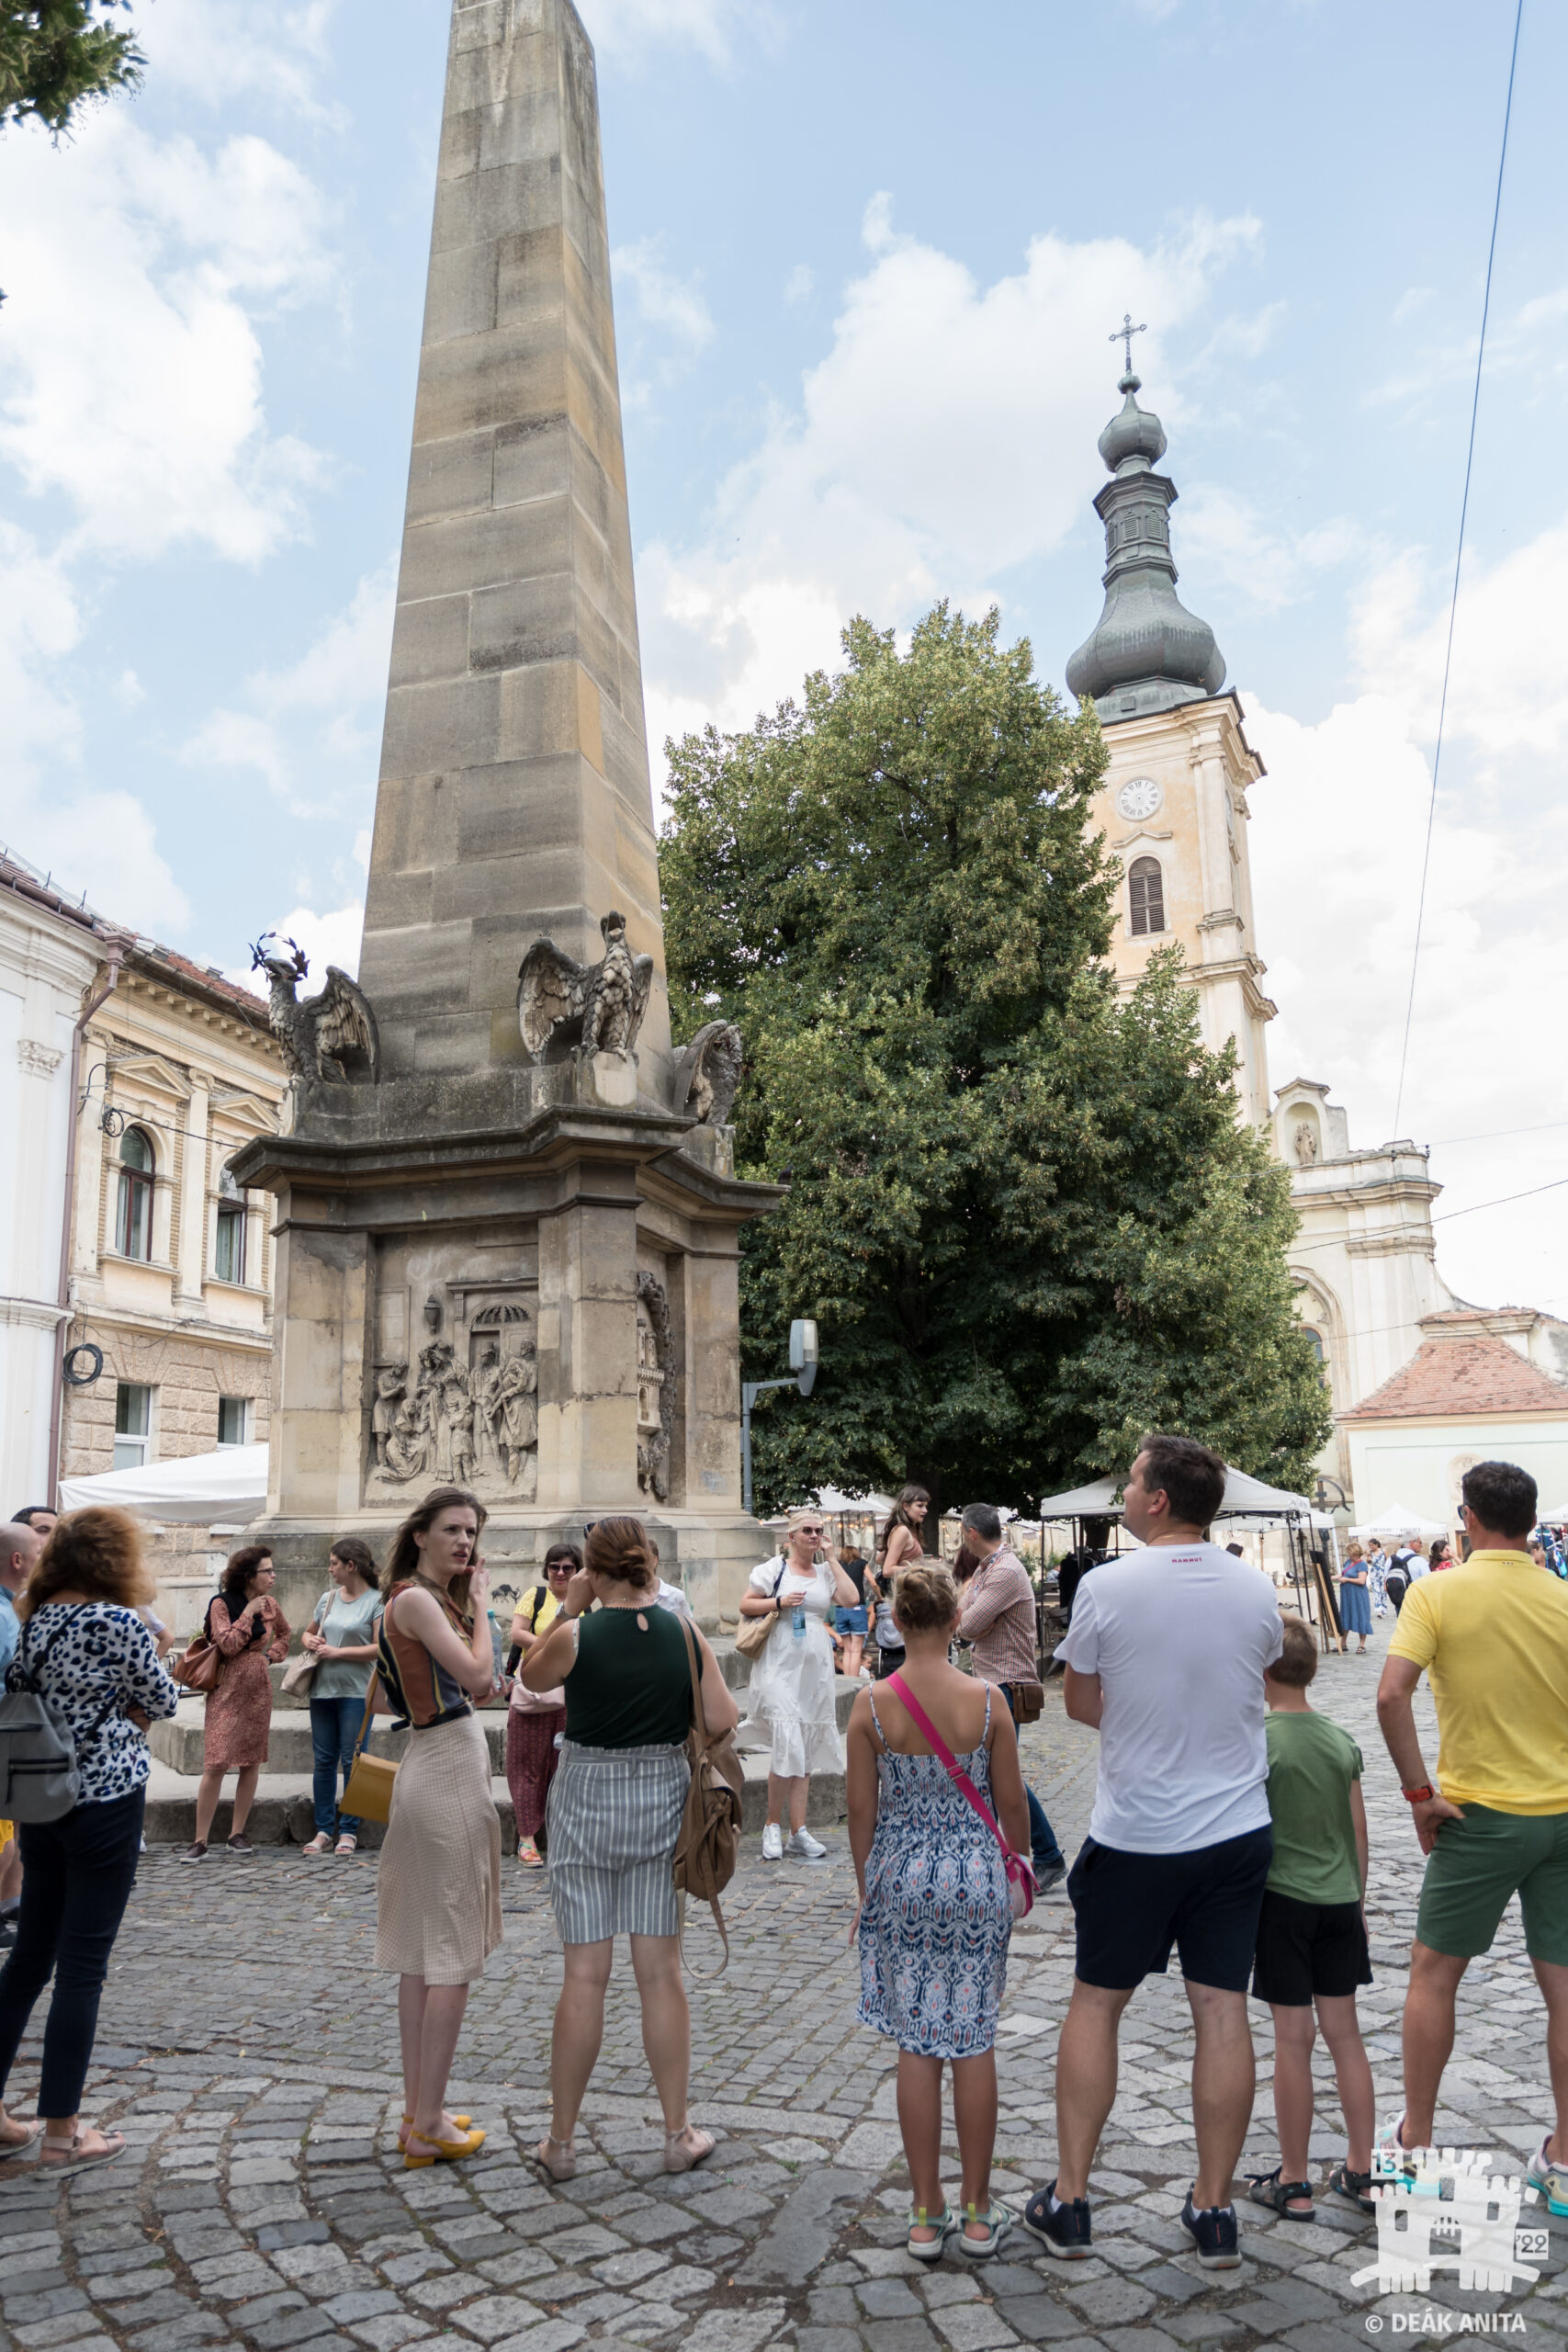 Clus–Kolozsvár–Klausenburg–Cluj település történeti és archeológiai kezdetei